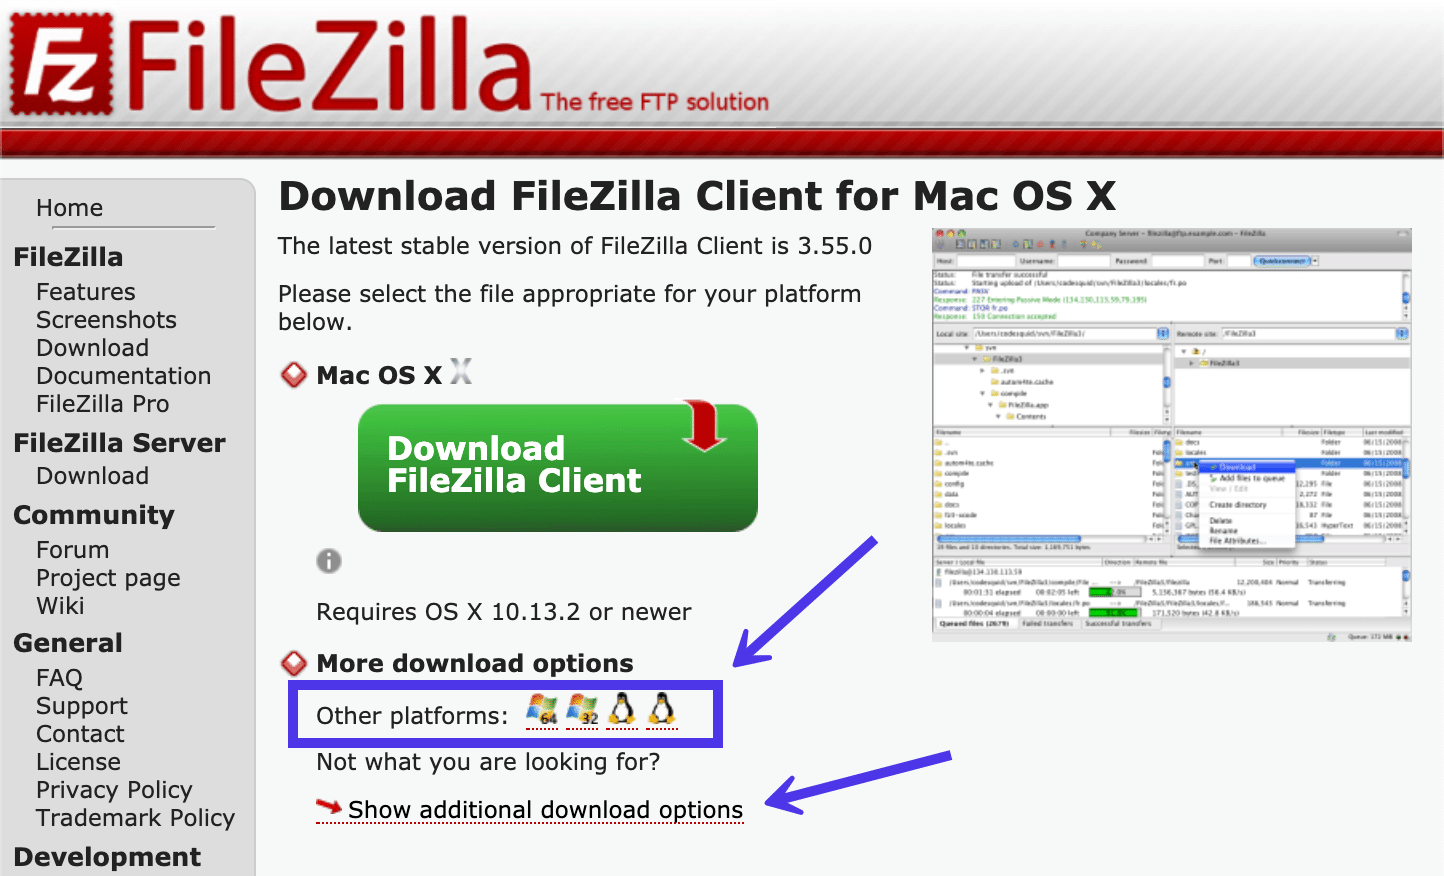 Você pode ver as versões FileZilla para outras plataformas.